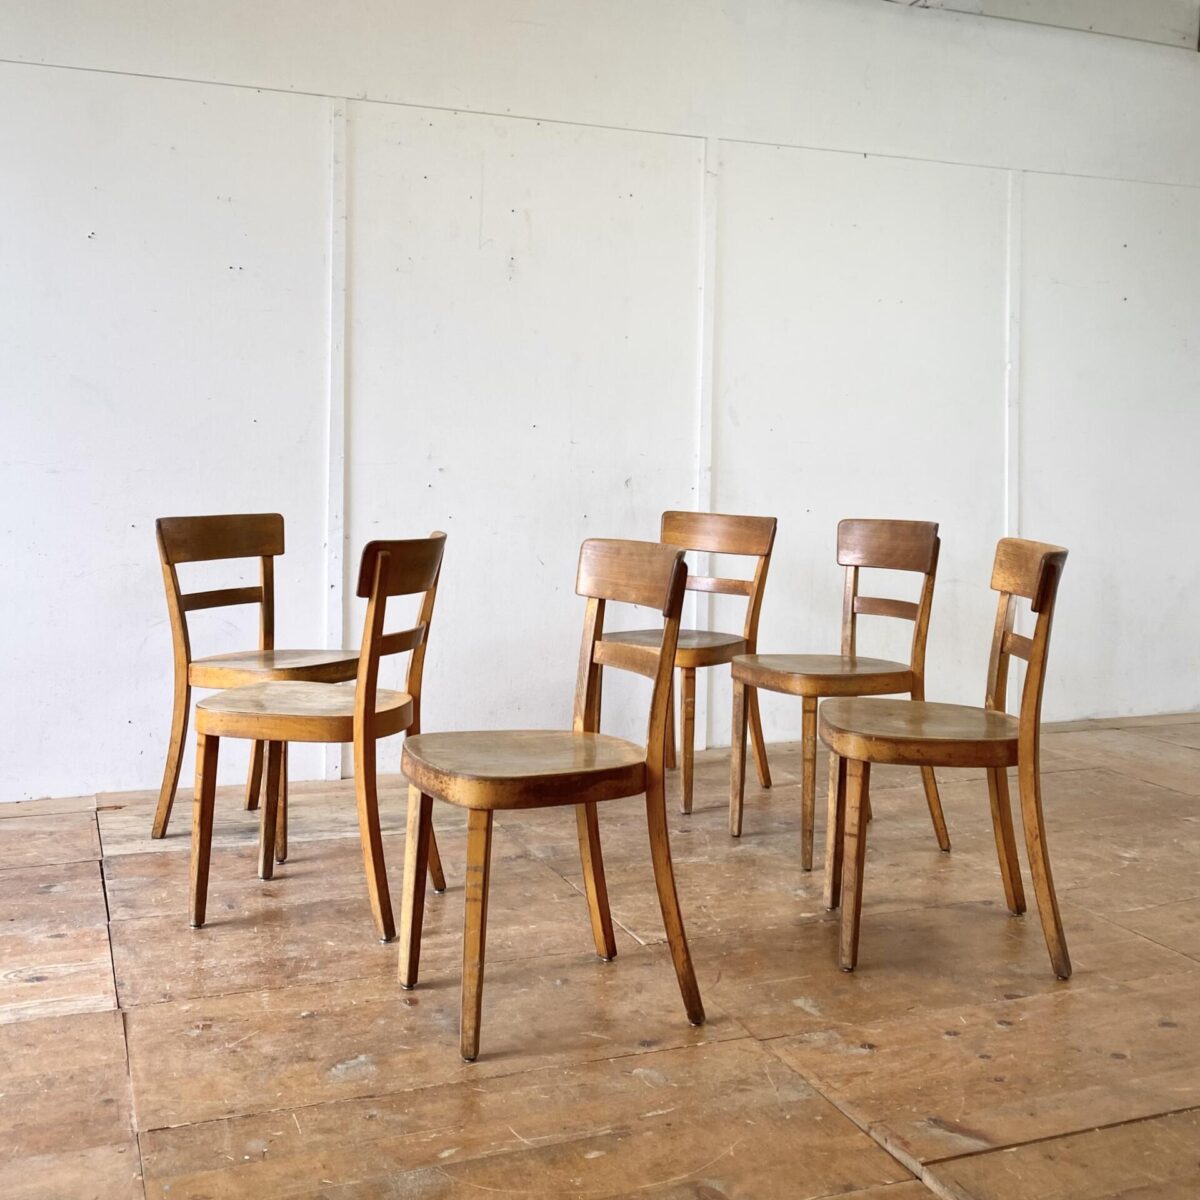 Deuxieme.shop swissdesign 60er Jahre Stühle. 6er Set Esszimmer Stühle von Horgenglarus, Jahrgang 1962. Die Sitzflächen sind aus Sperrholz mit Sitzmulde, die übrigen Teile aus Buche Vollholz, Dampfgebogen. Die Stühle sind in Original Zustand mit lebhafter Alterspatina. Technische Mängel sind restauriert. 